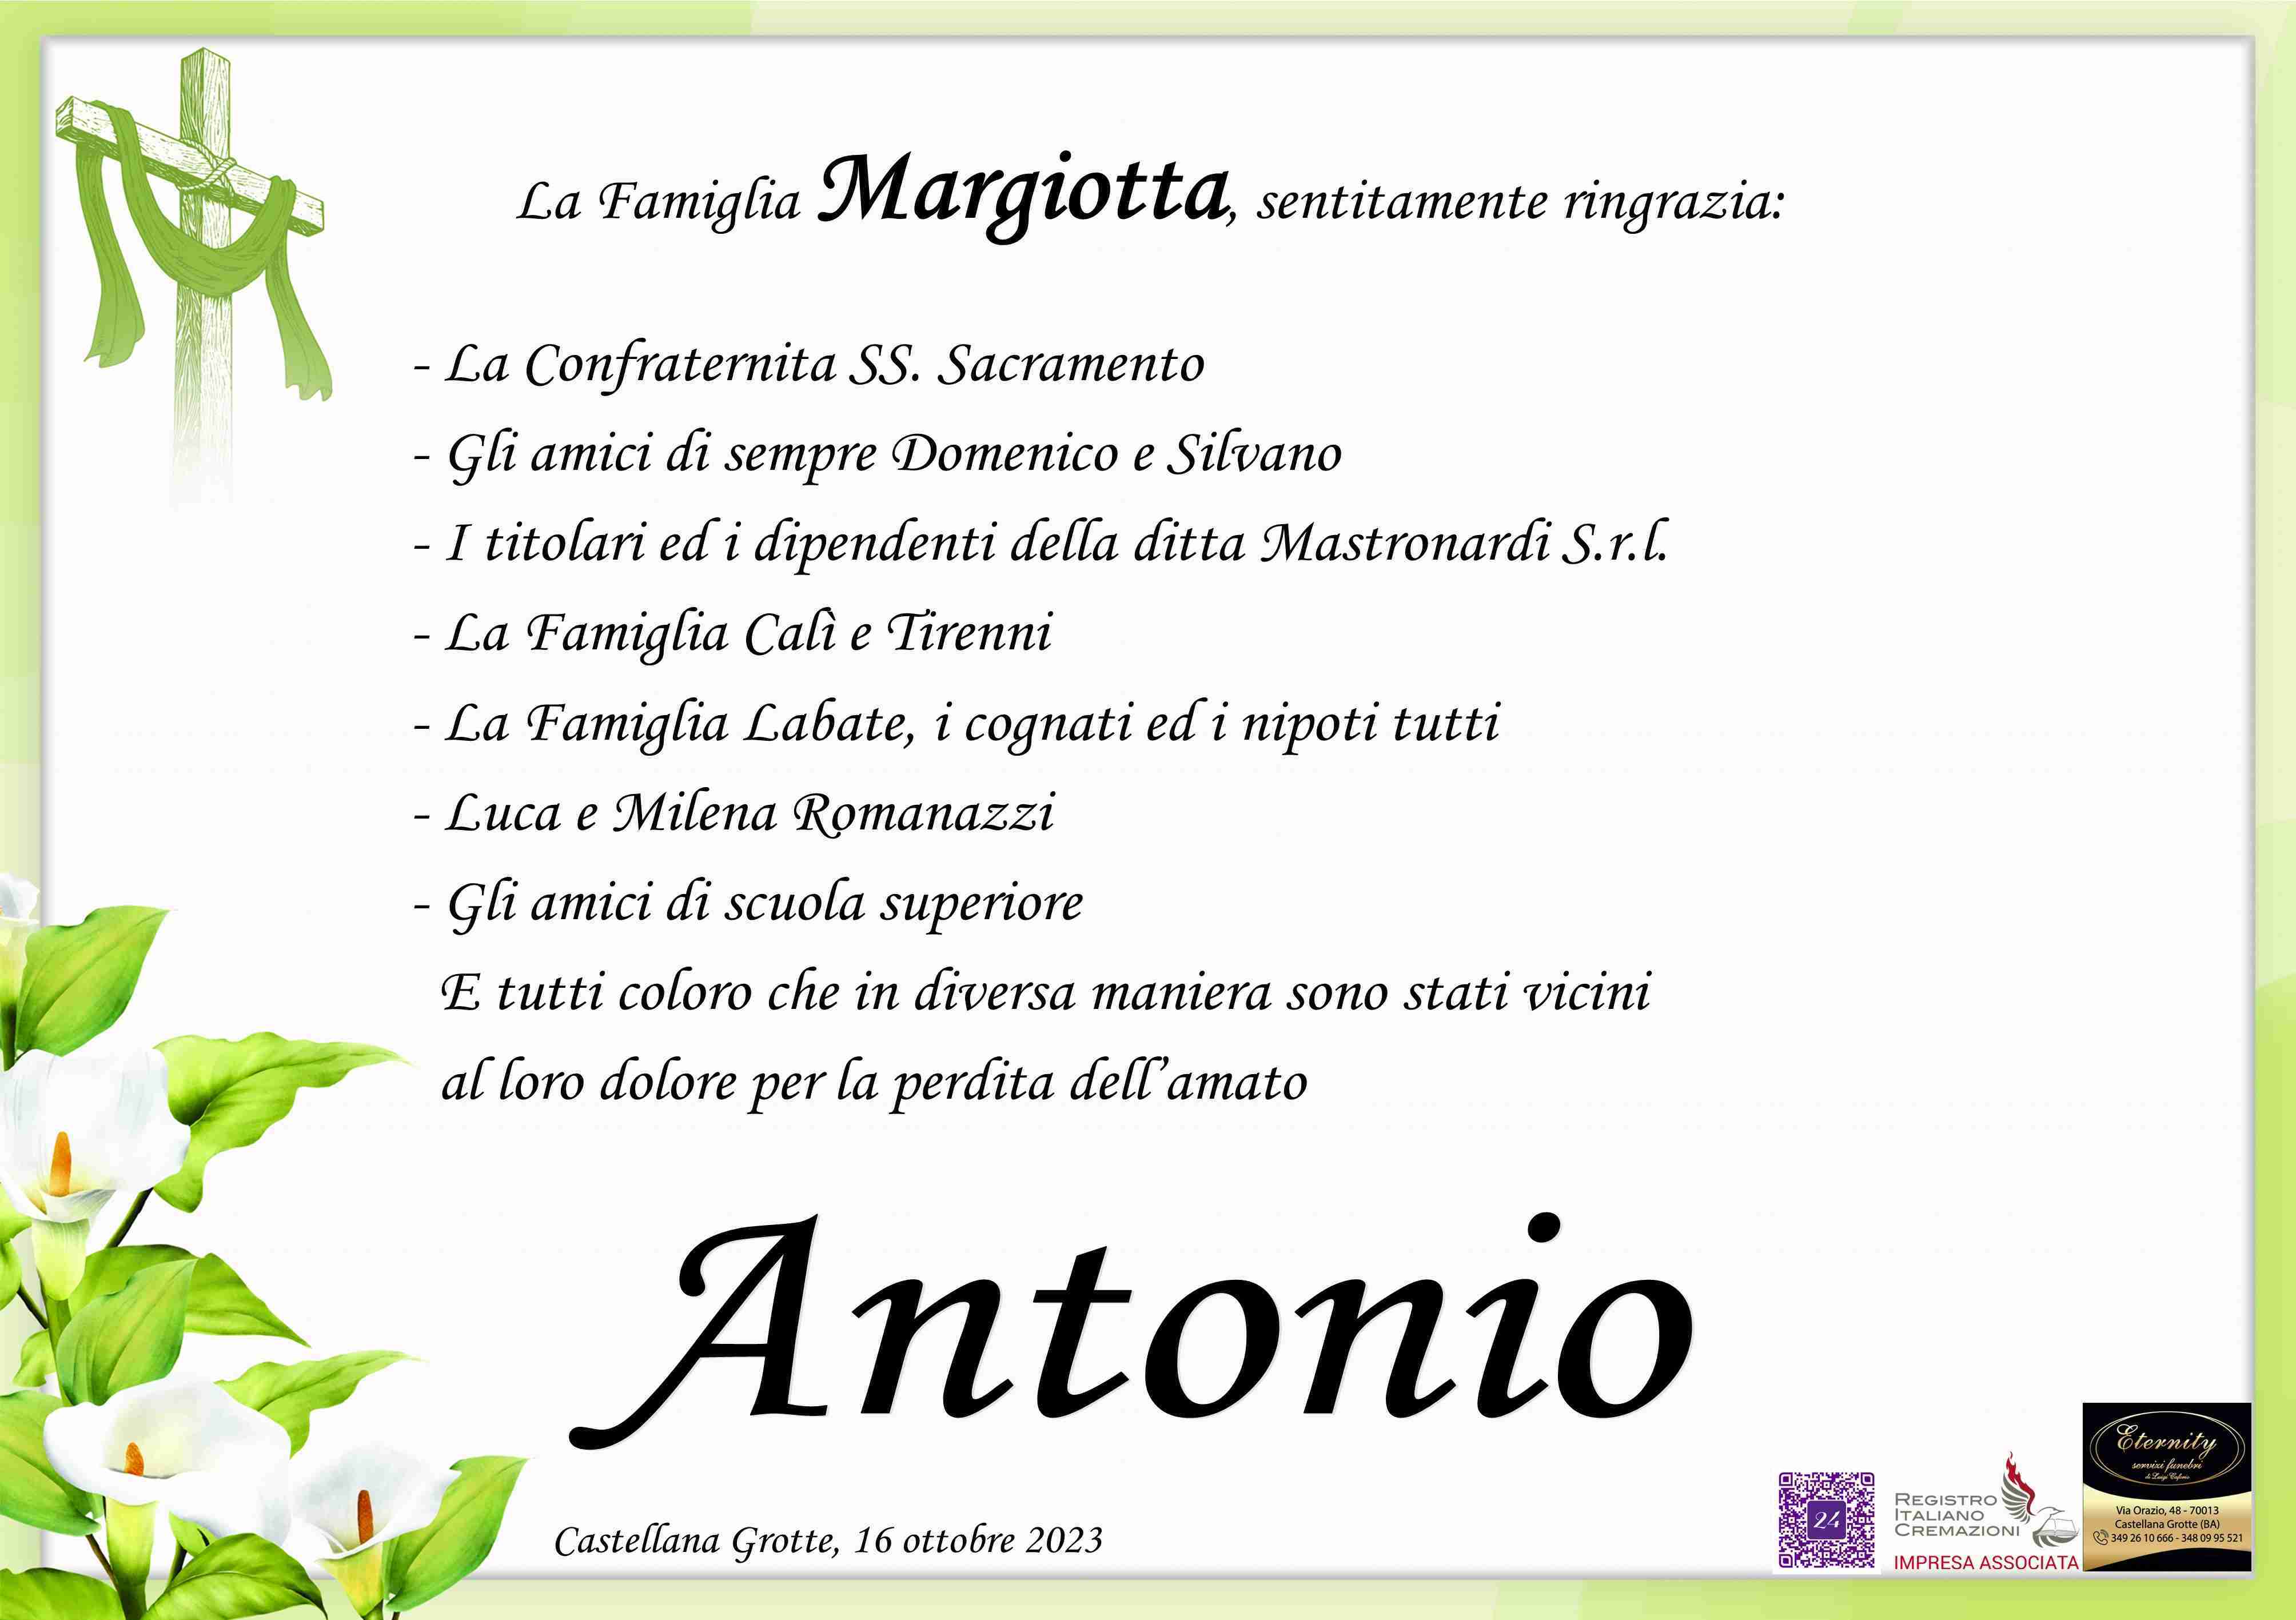 Antonio Margiotta